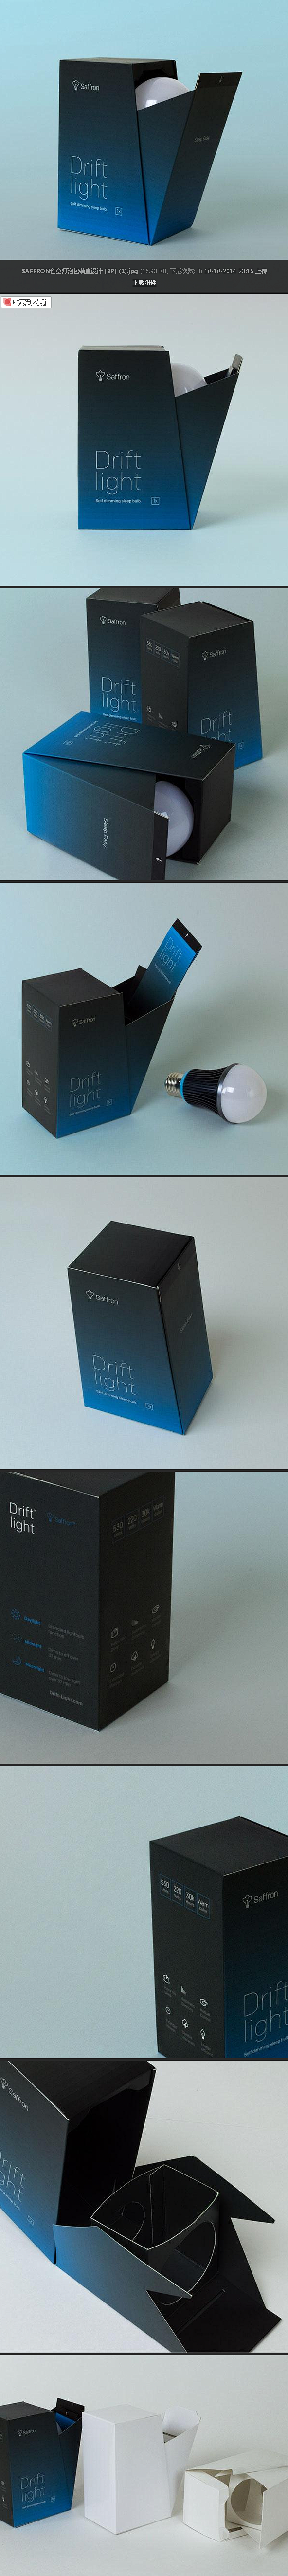 SAFFRON创意灯泡包装盒设计 [9P...